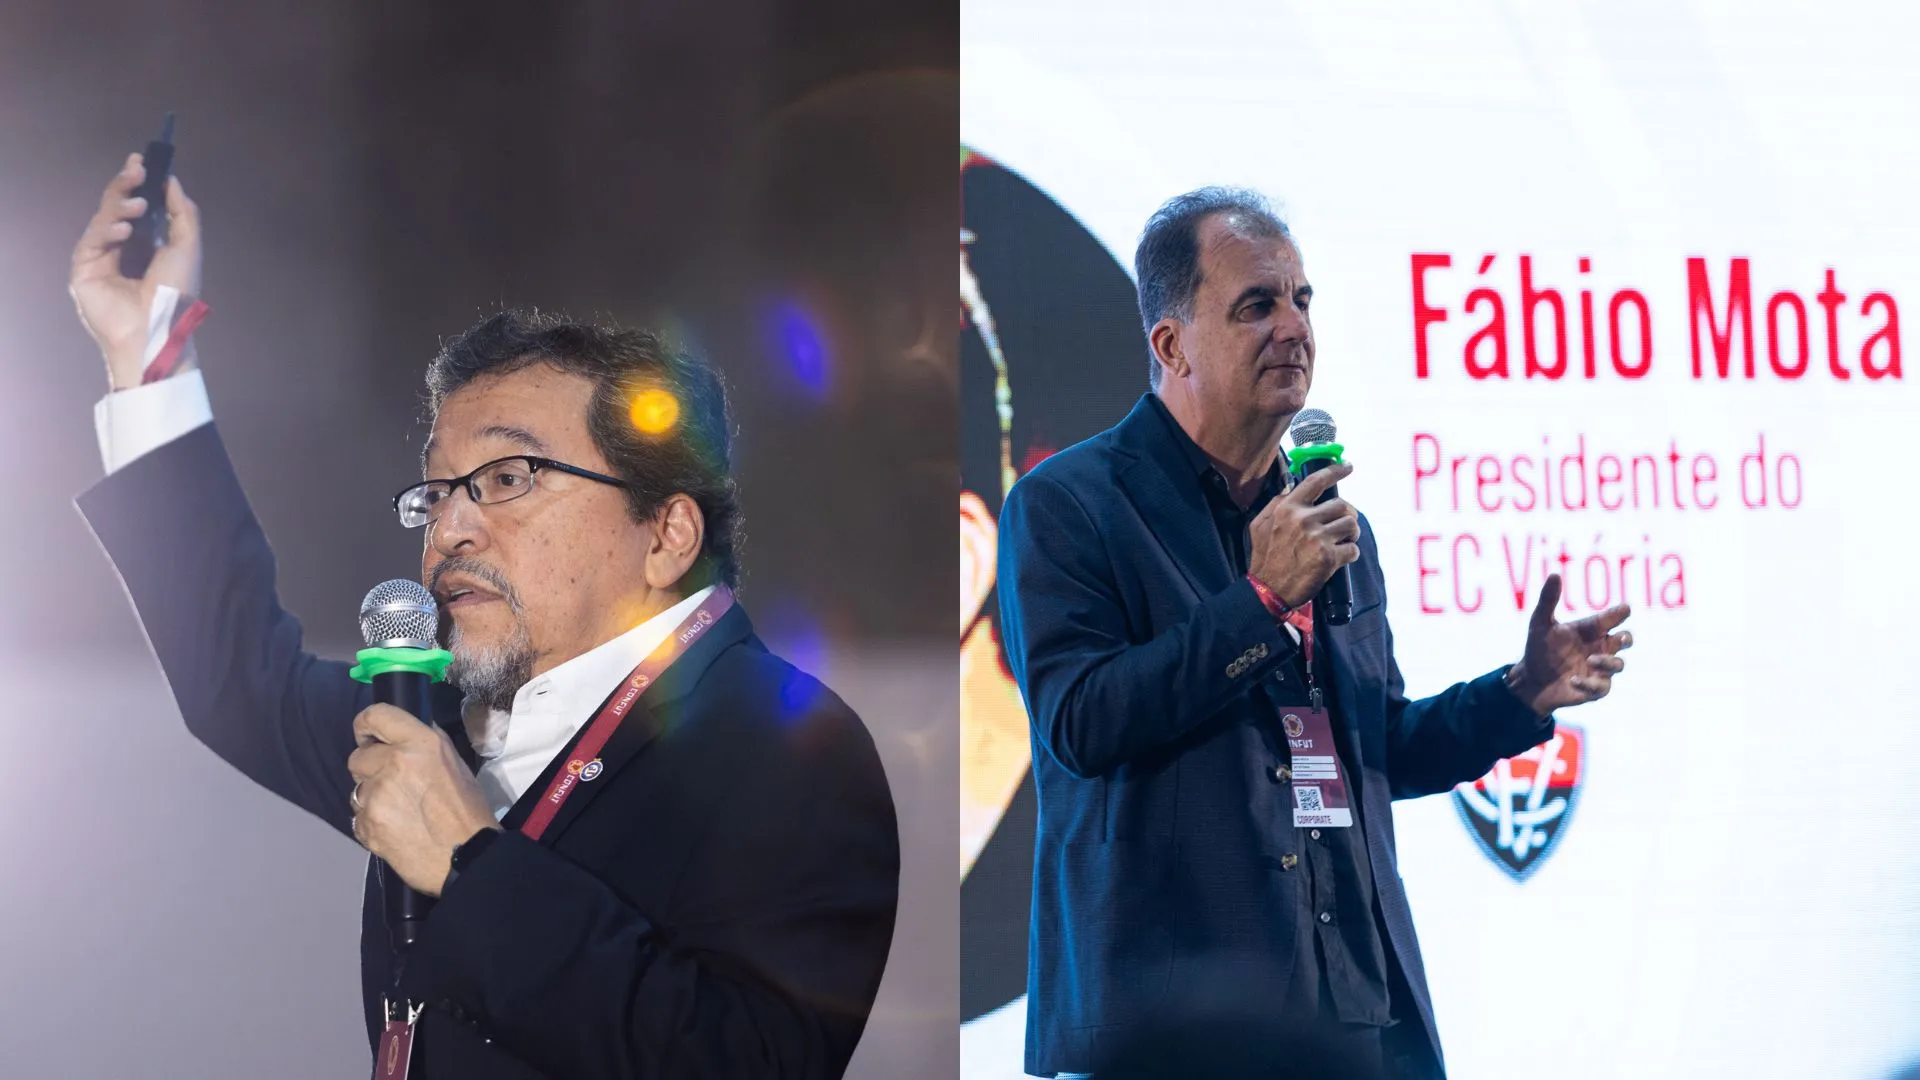 Raul Aguirre, CEO do Bahia e Fábio Mota, Presidente do Vitória marcaram presença no evento